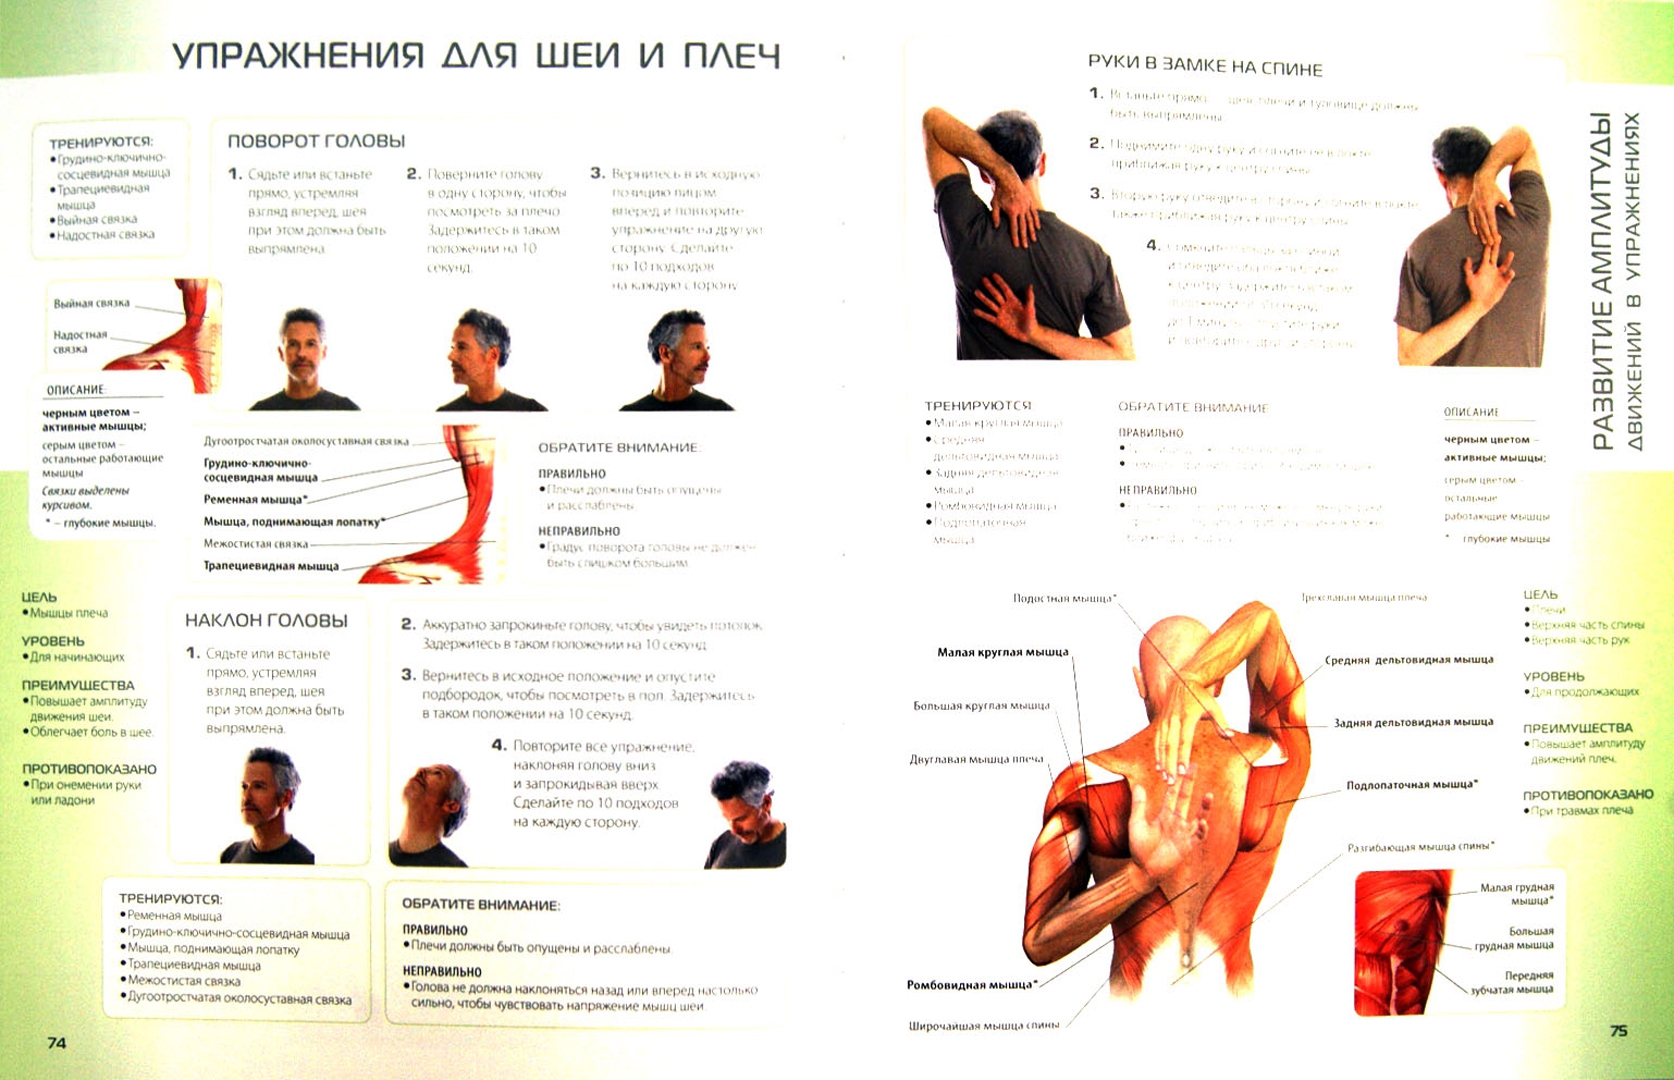 Видео упражнения для позвоночника шее. Упражнения для шеи. Упражнения для спины и шеи. Лечебно-физкультурный комплекс упражнений для шеи. Лечебные упражнения для спины и шеи.